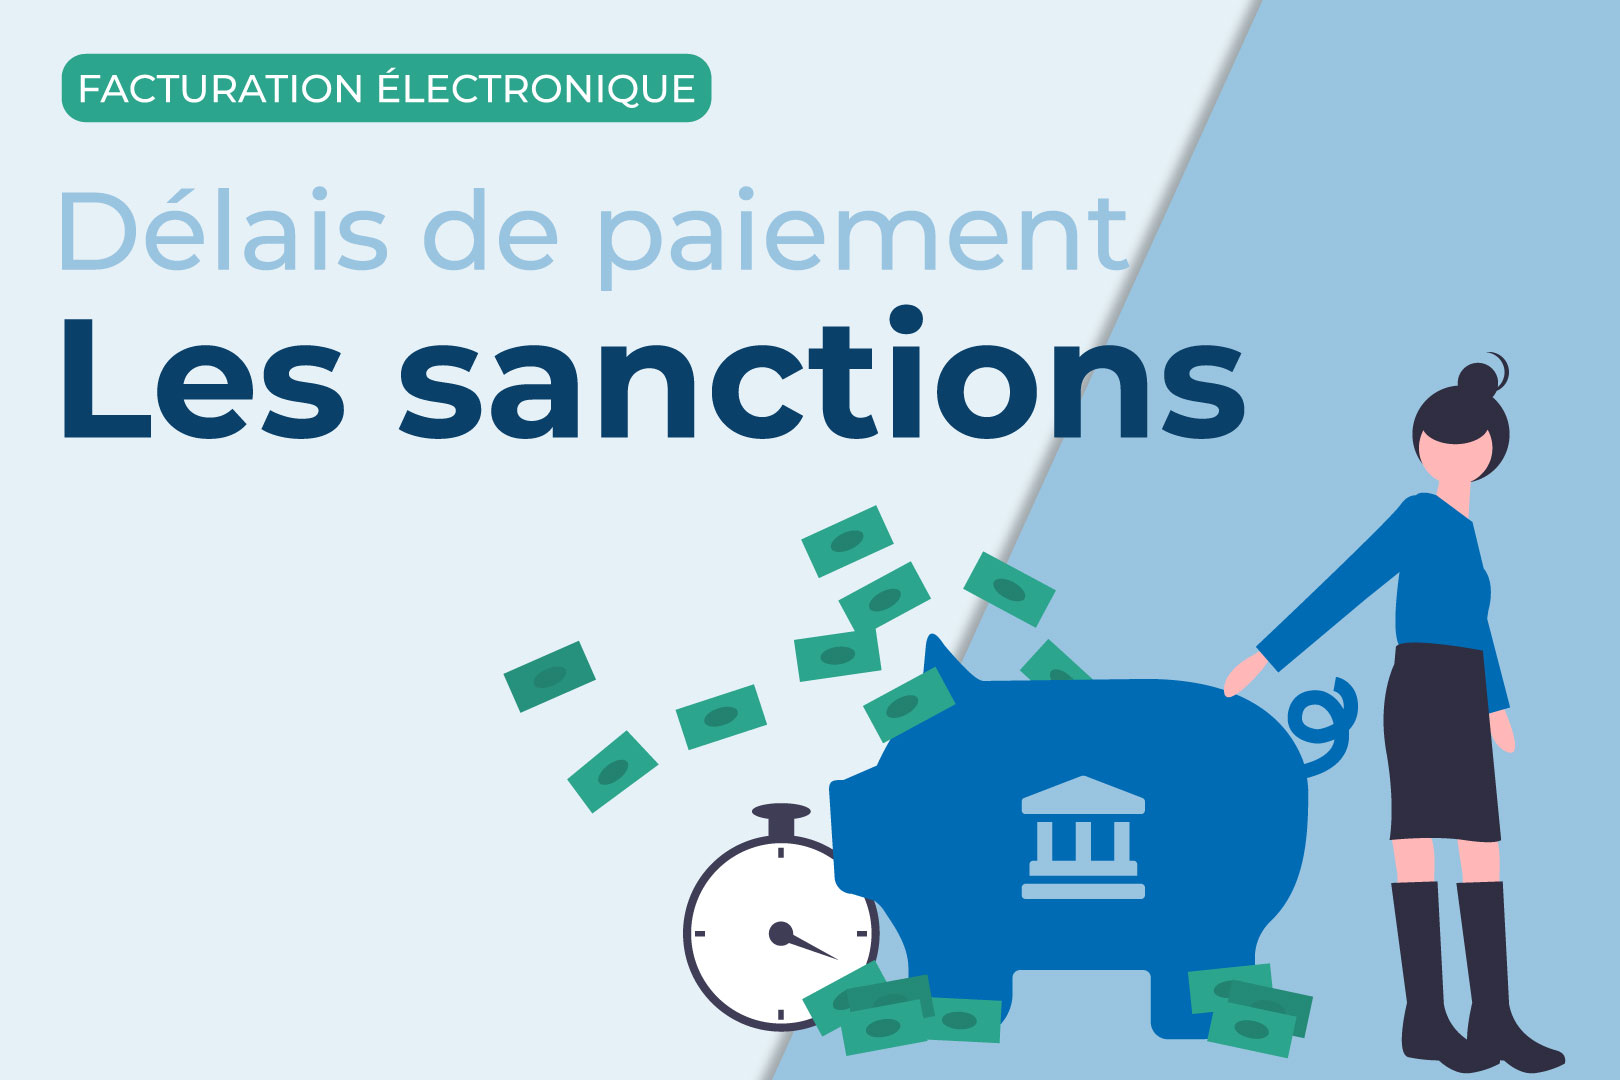 delais-paiement-sanctions